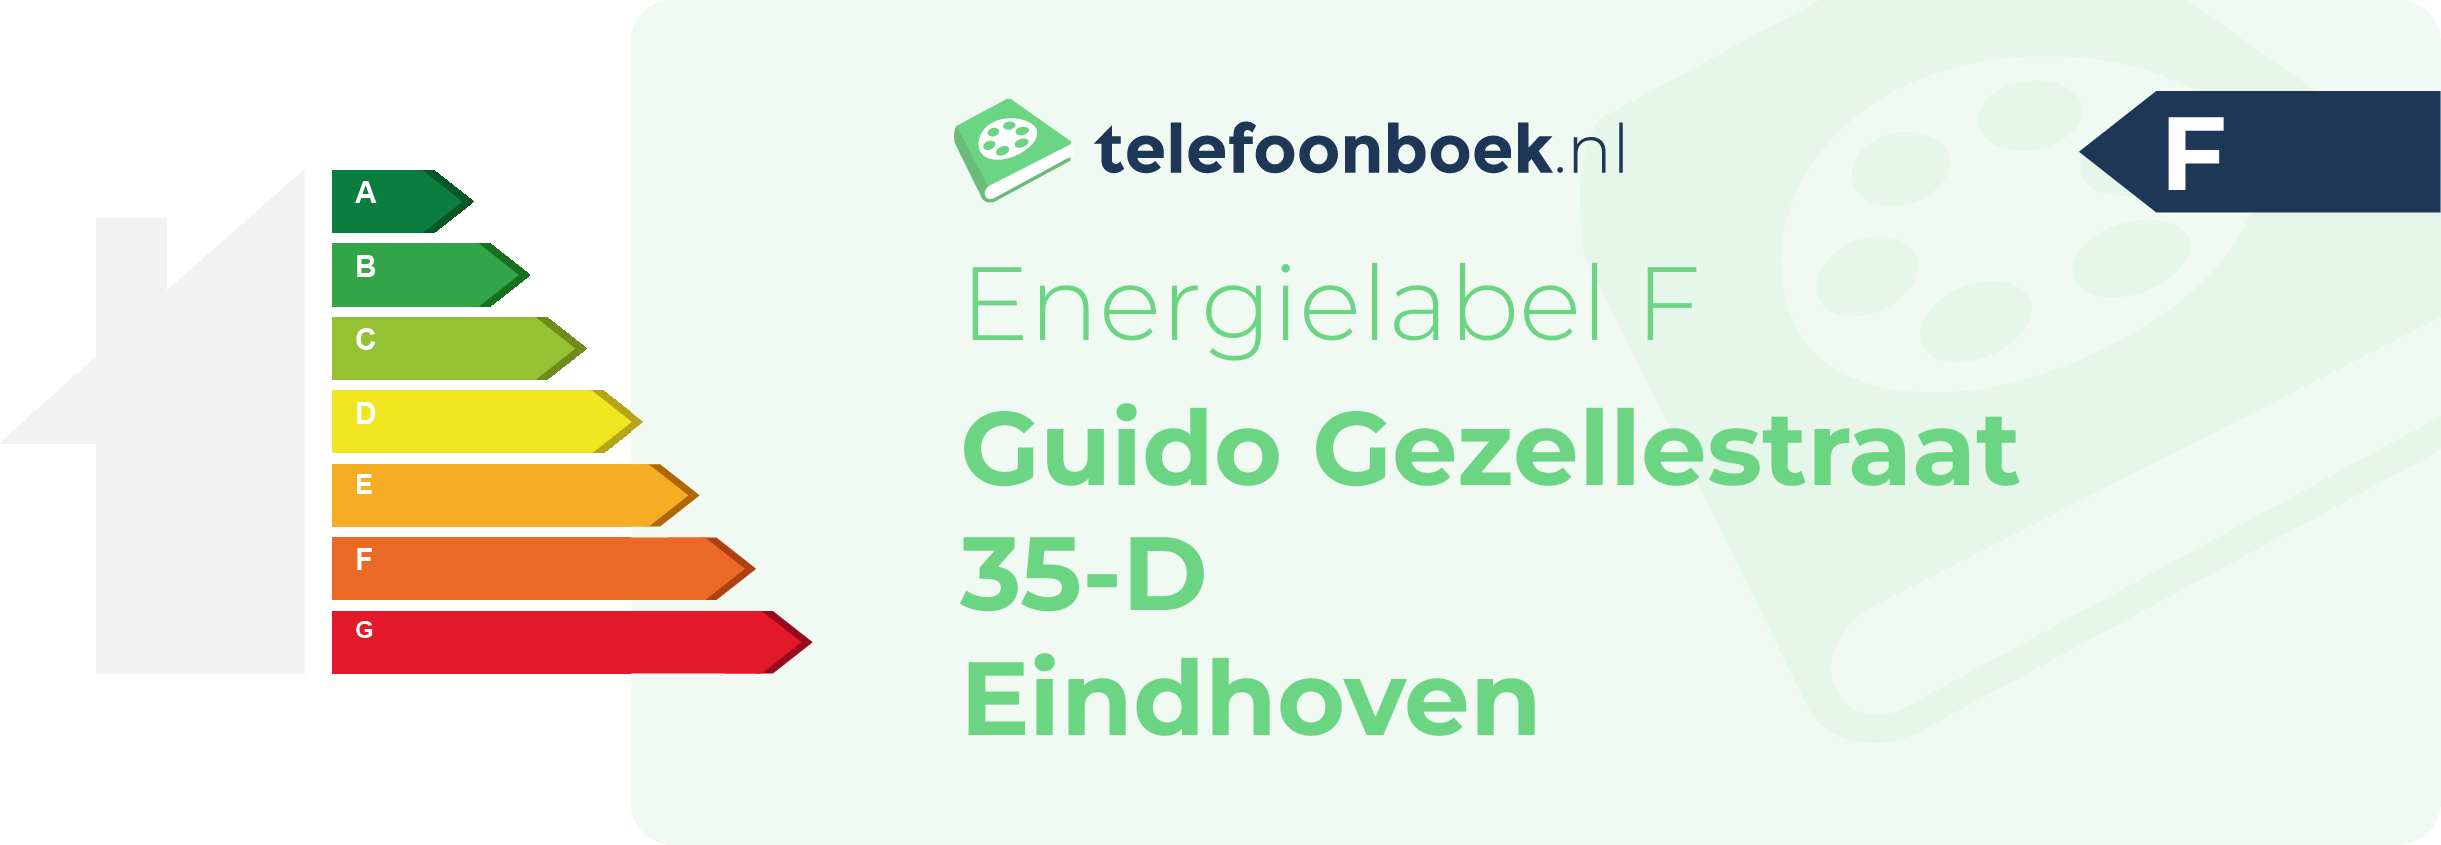 Energielabel Guido Gezellestraat 35-D Eindhoven